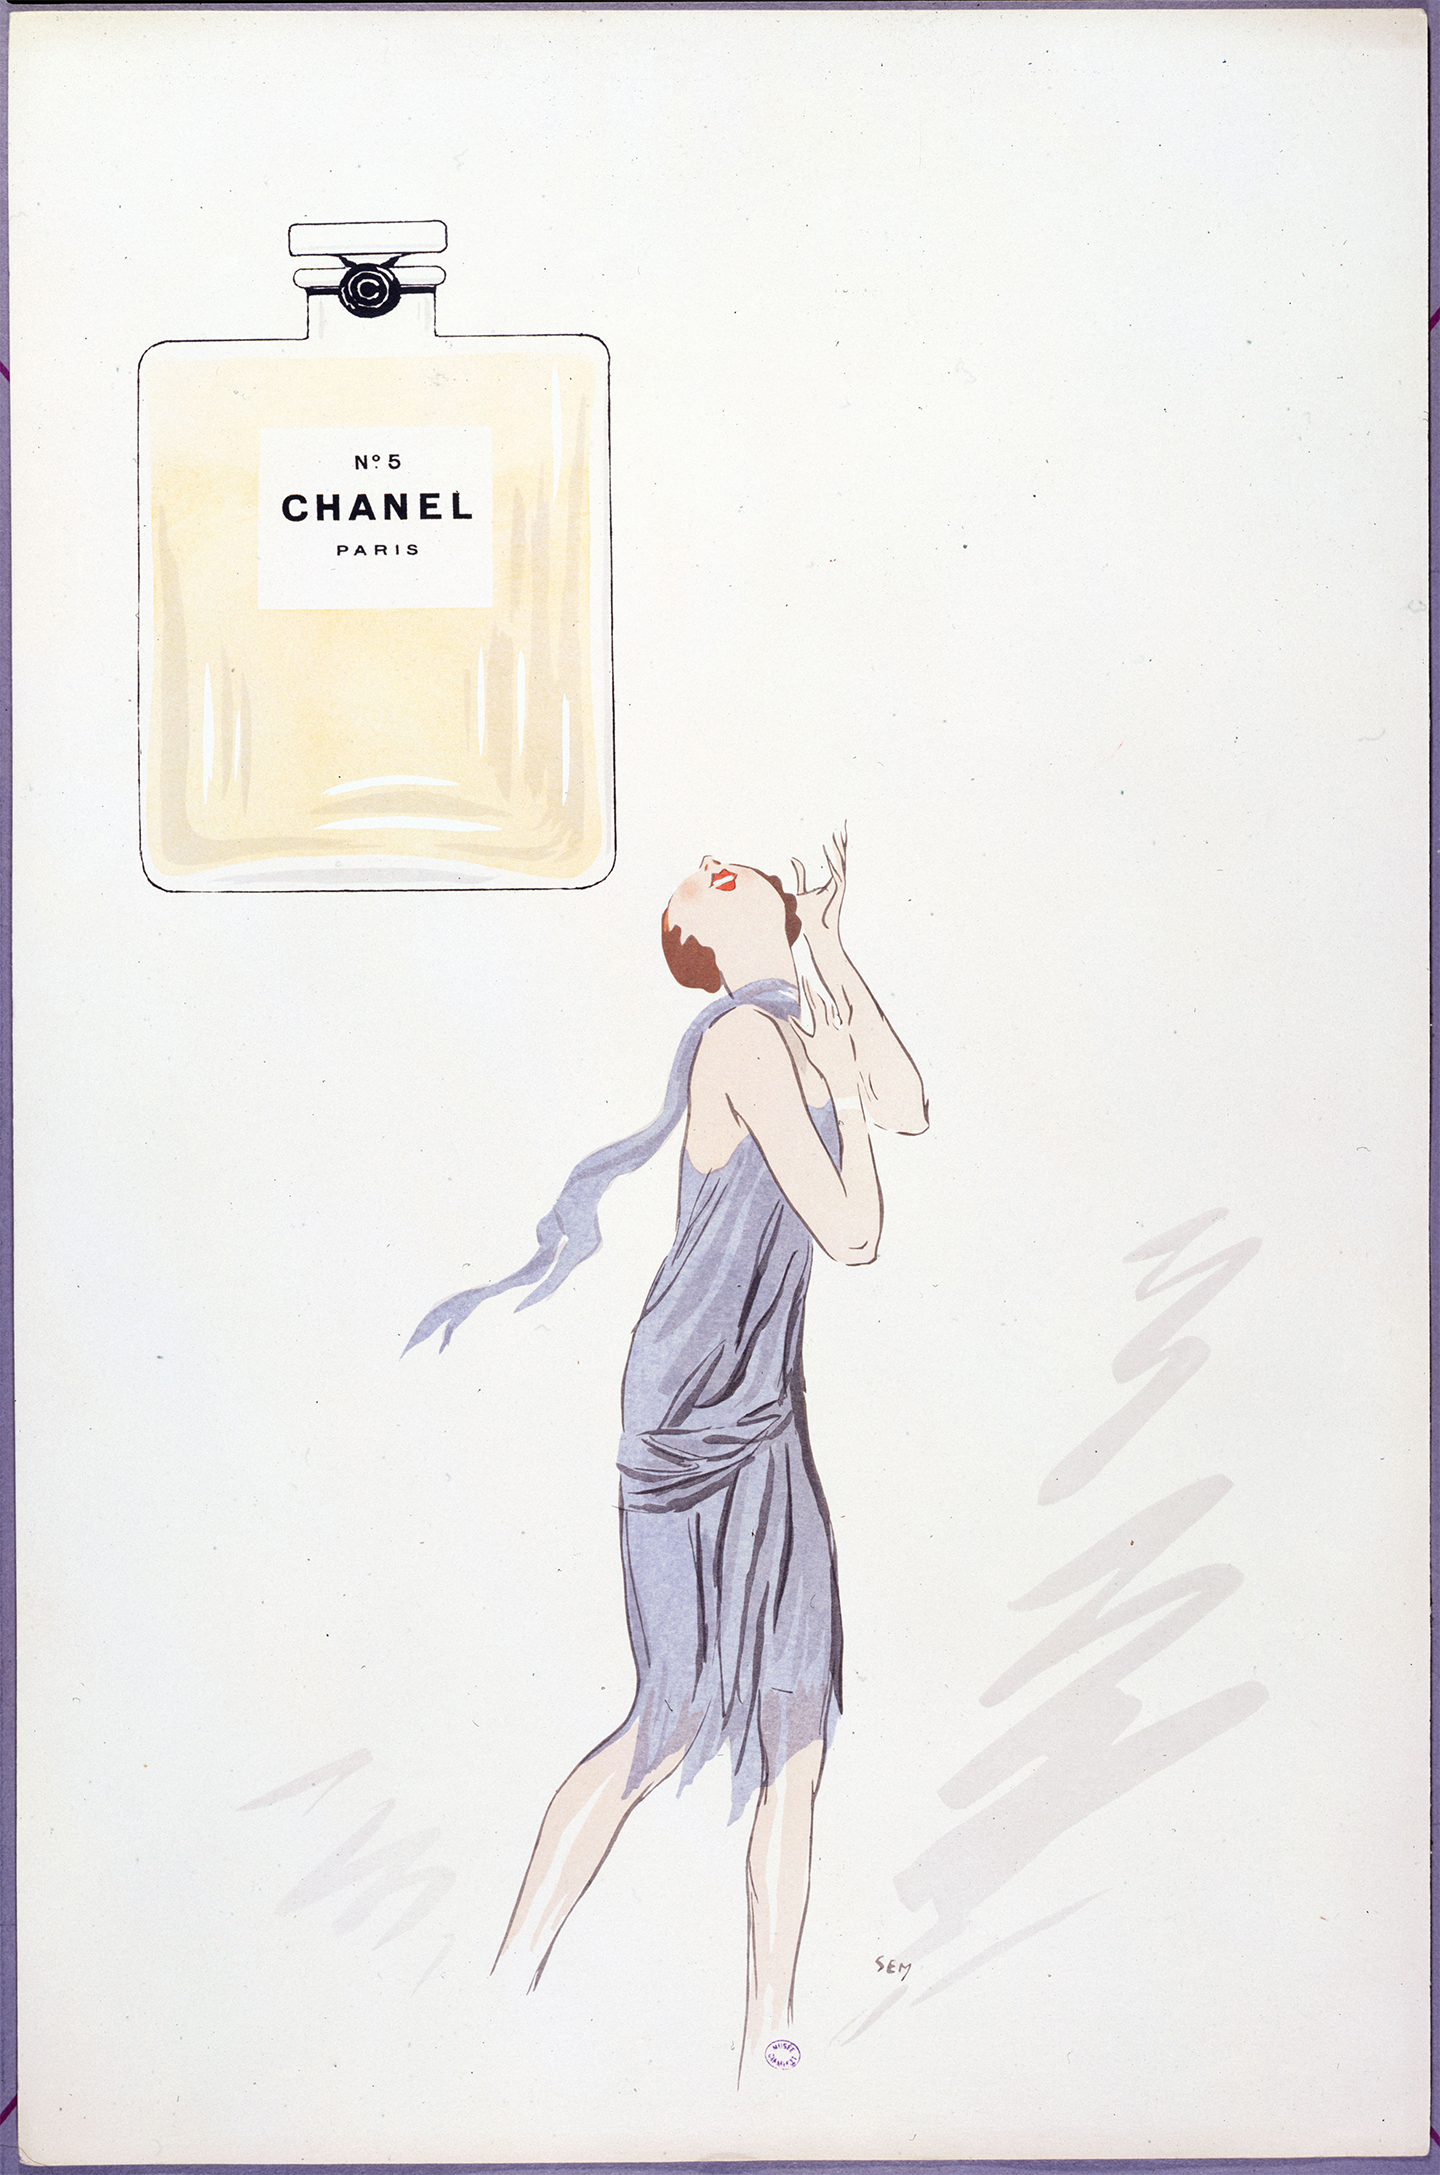 Sem (Georges Goursat, dit). Album White Bottoms: N°5 Chanel Paris. 1927. Musée Carnavalet, Histoire de Paris ©Paris Musées/Musée Carnavalet – Histoire de Paris. Courtesy of Victoria and Albert Museum, London